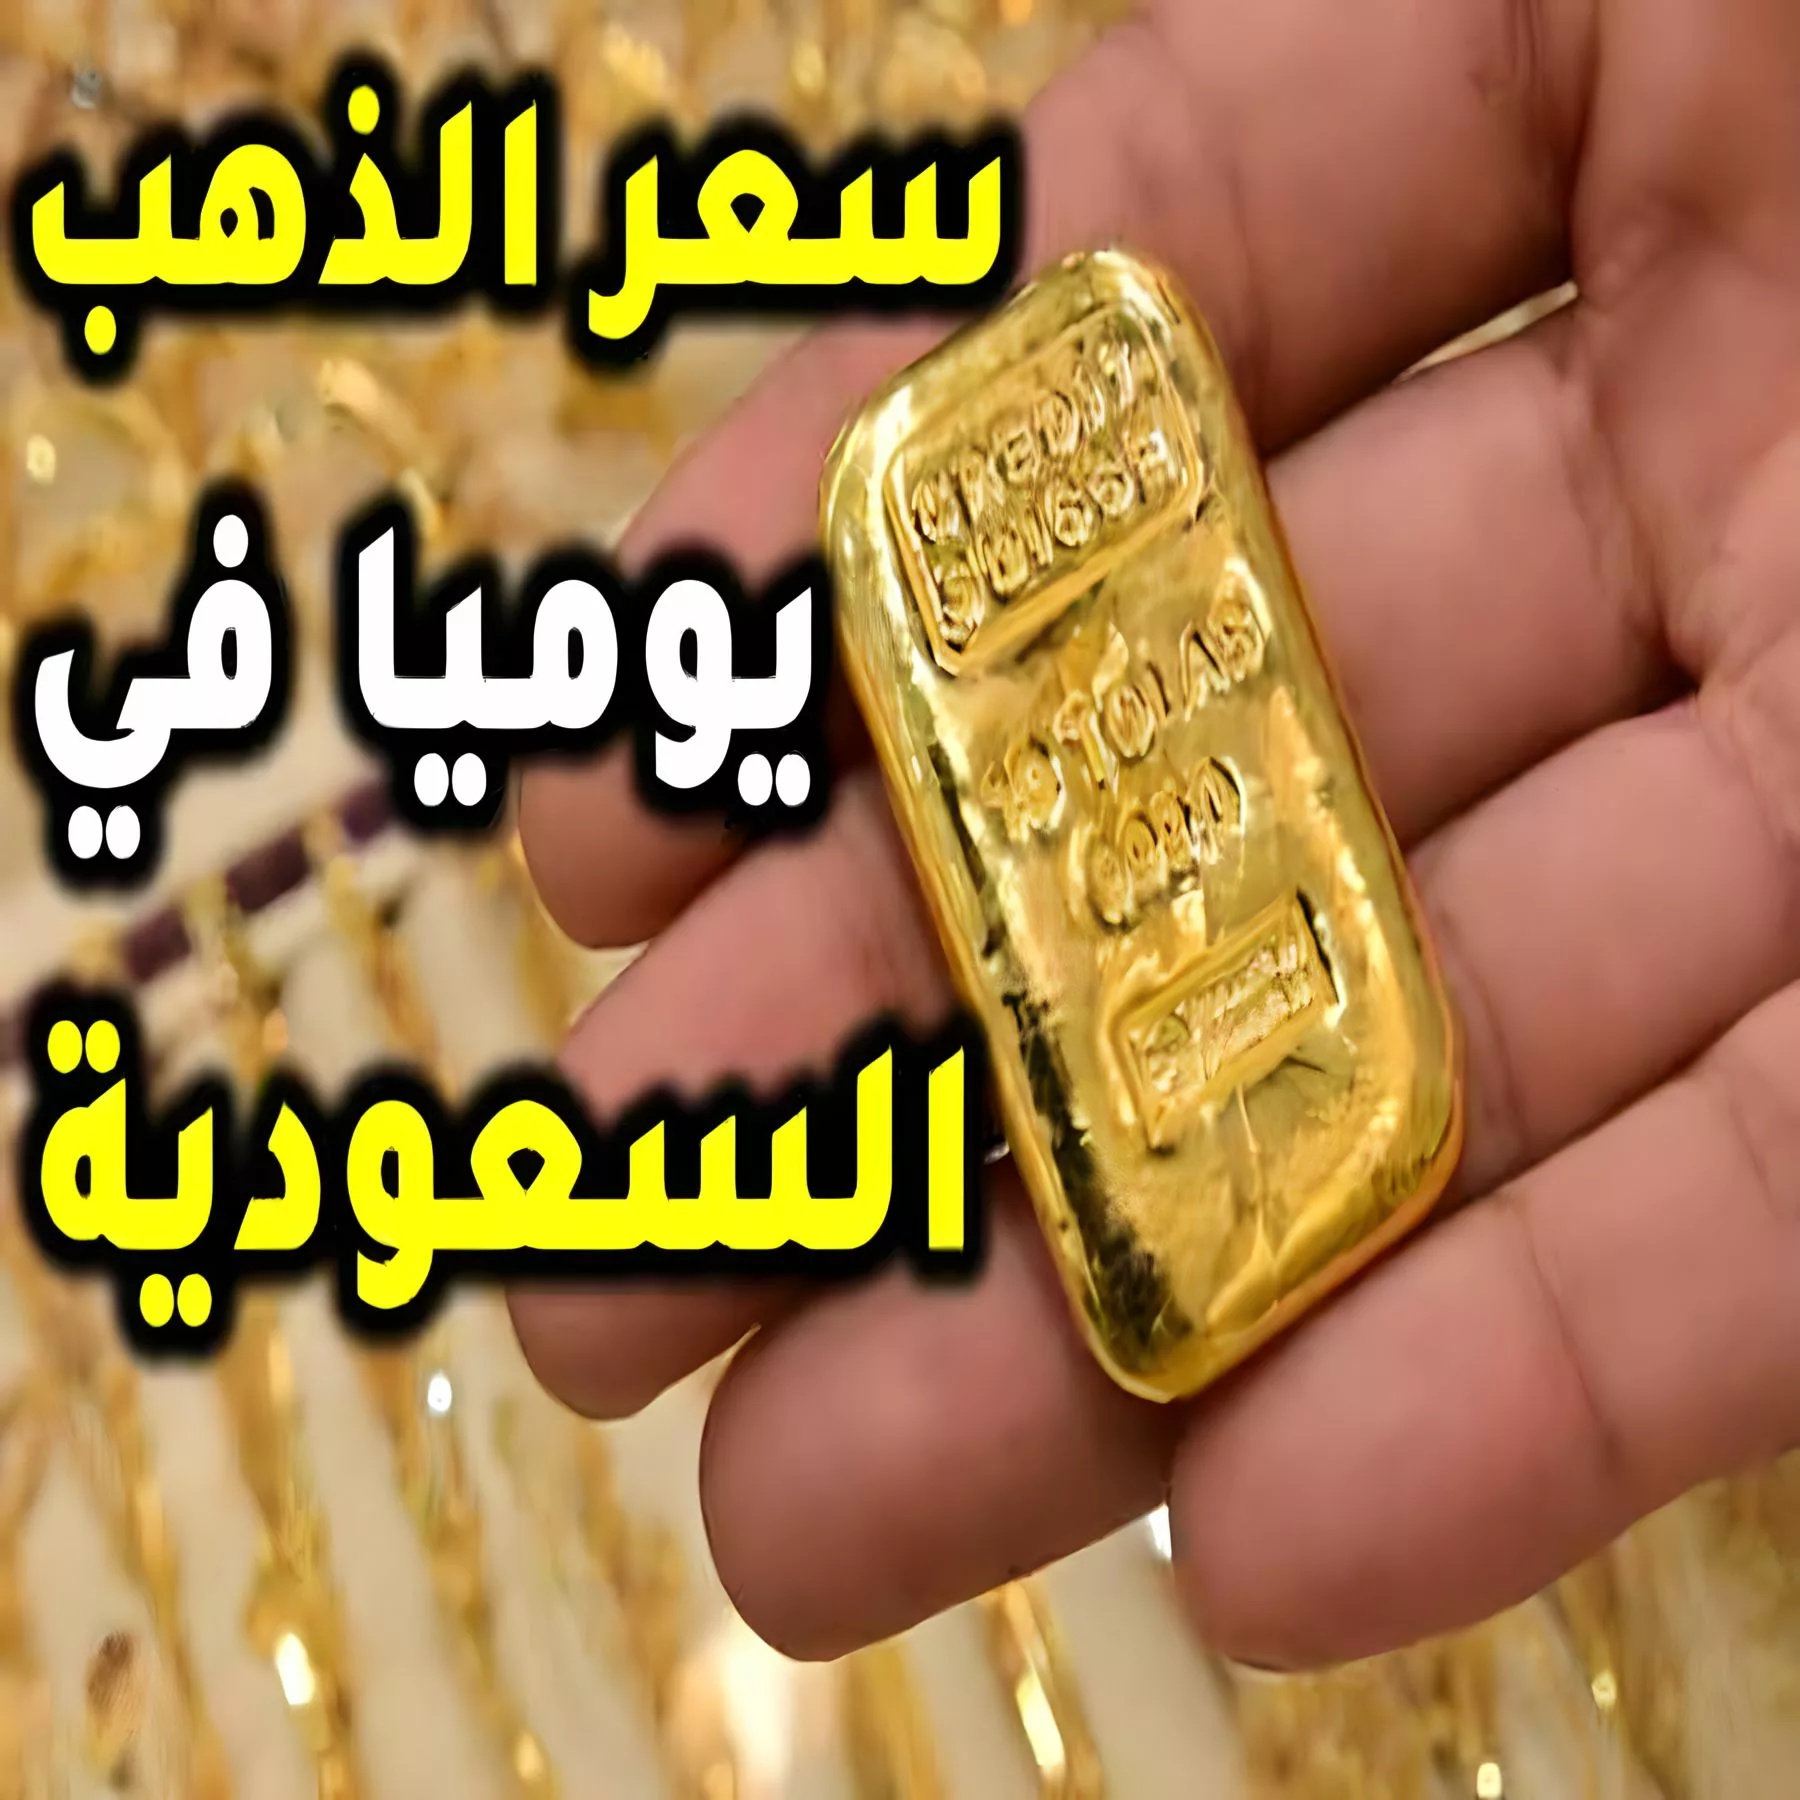 سعر الذهب اليوم في السعودية.jpg